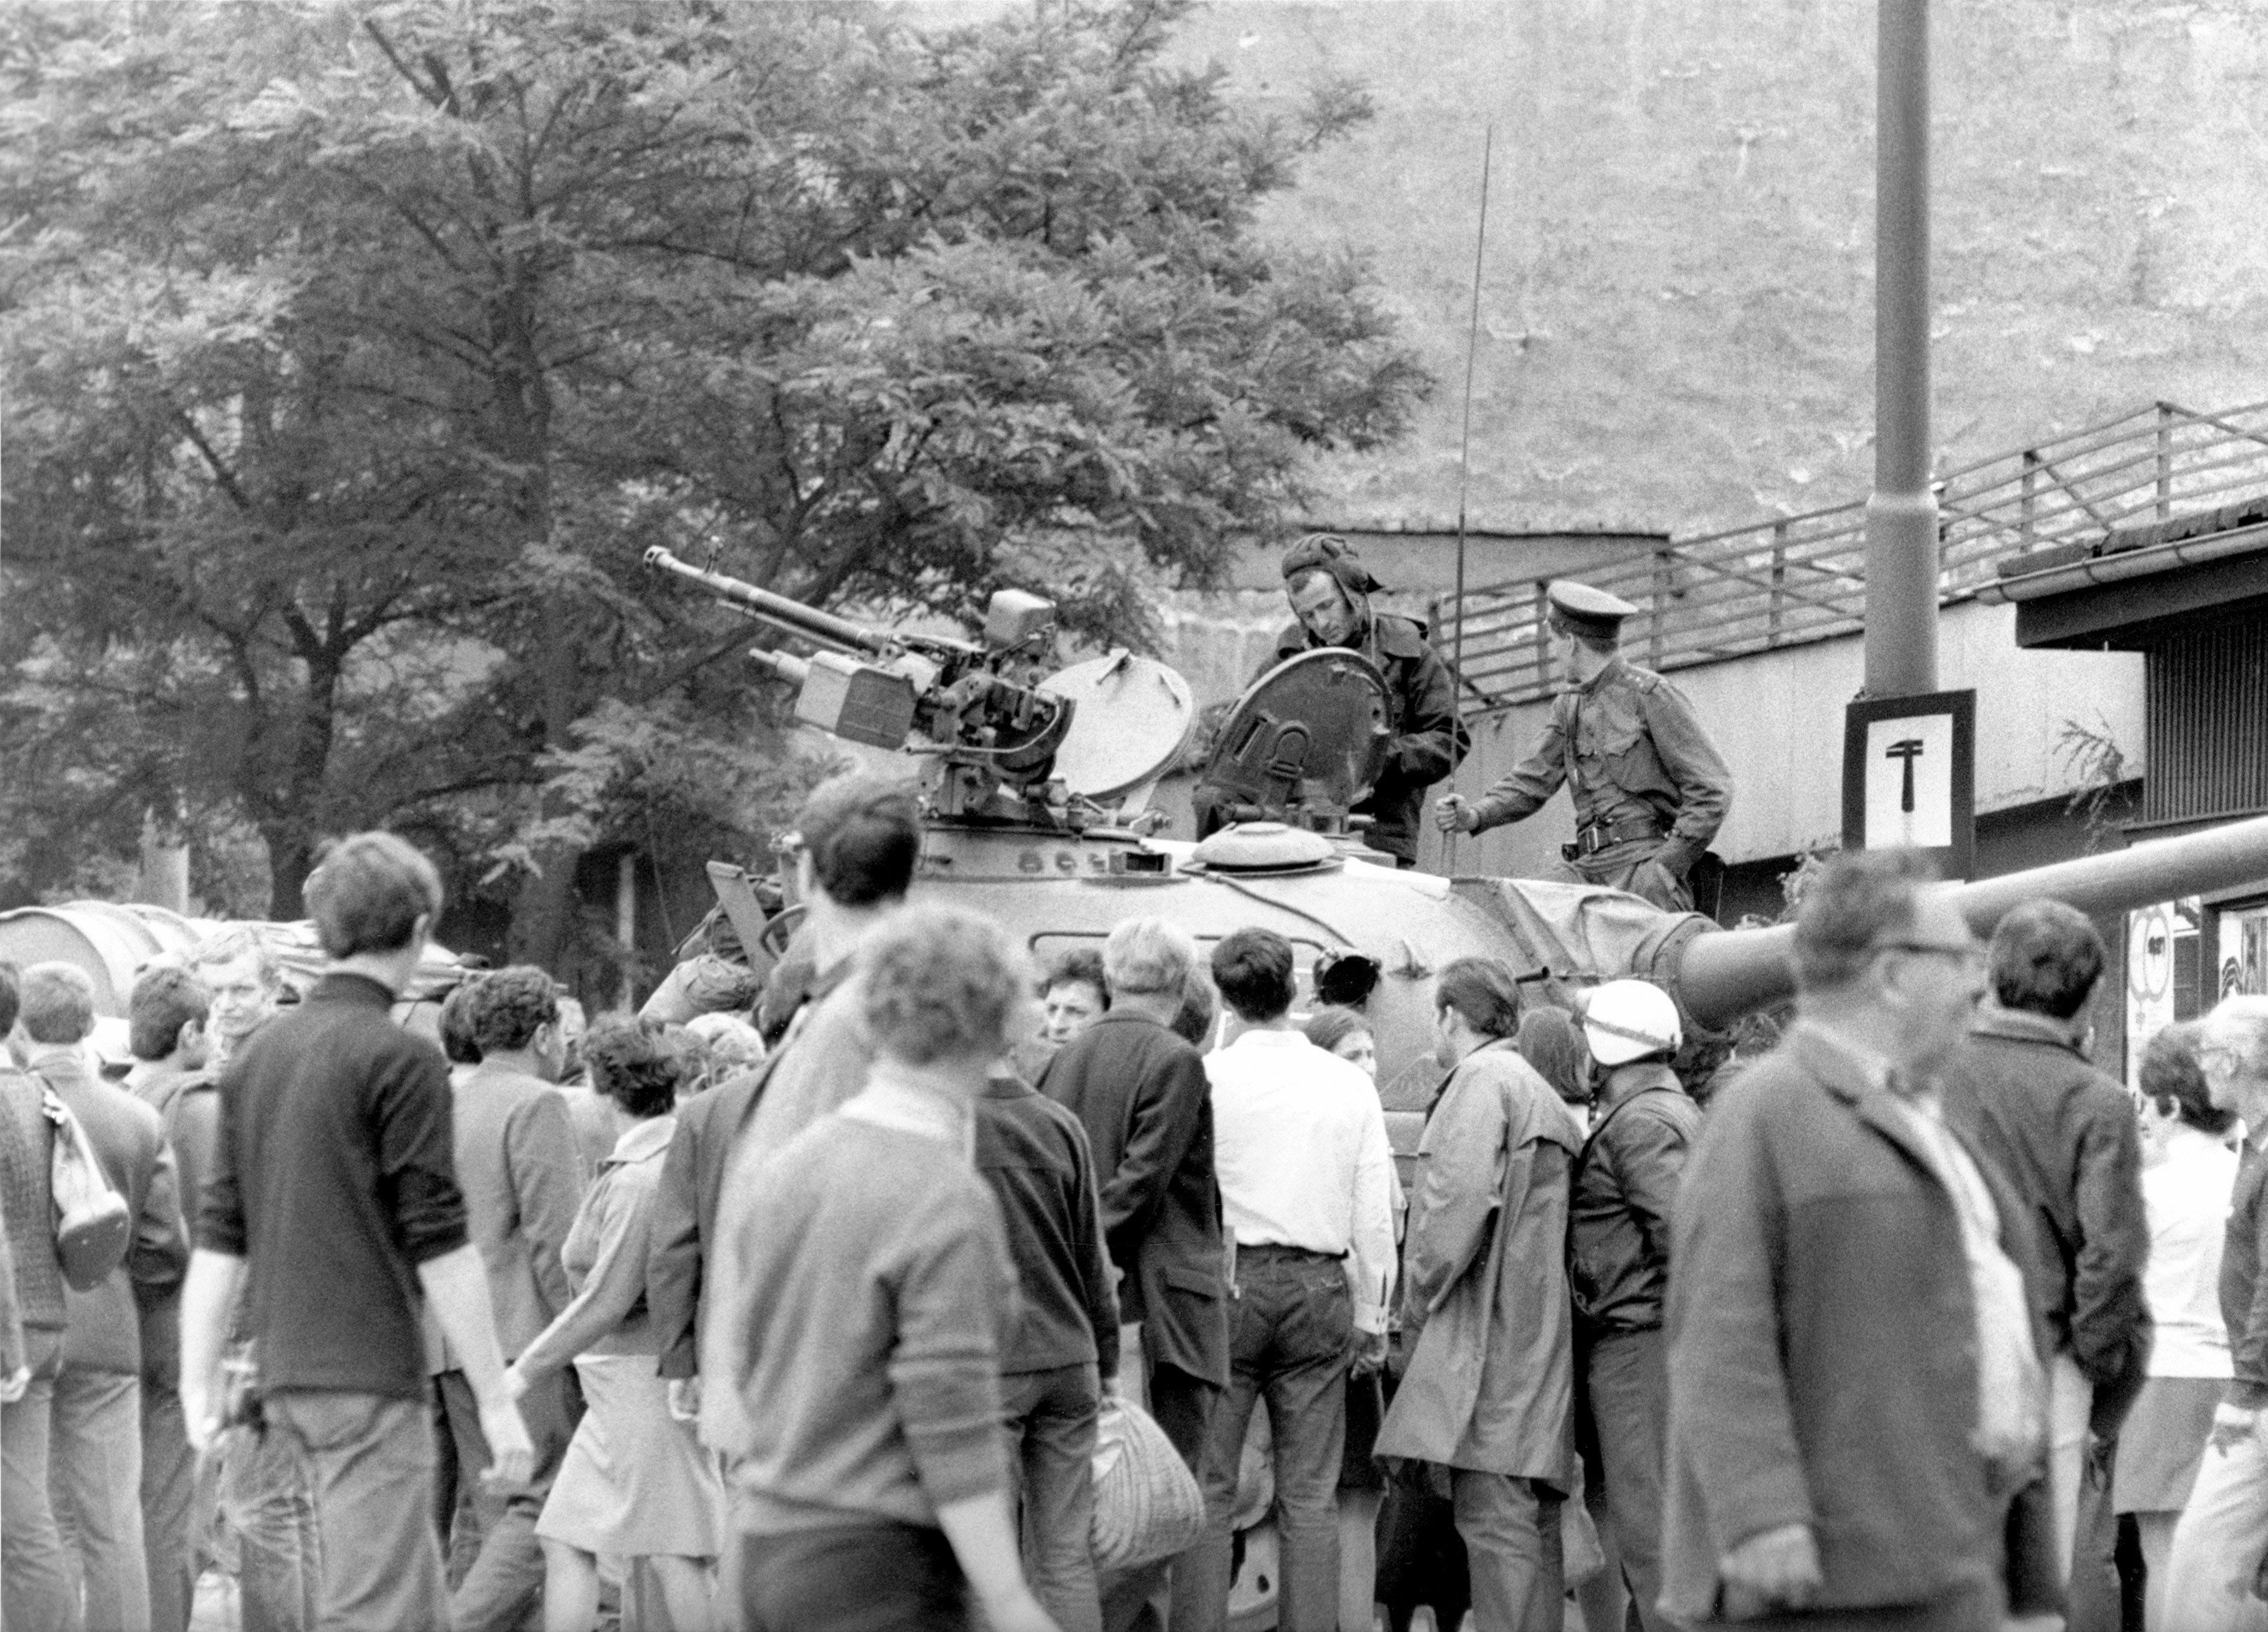 Okupace v roce 1968 